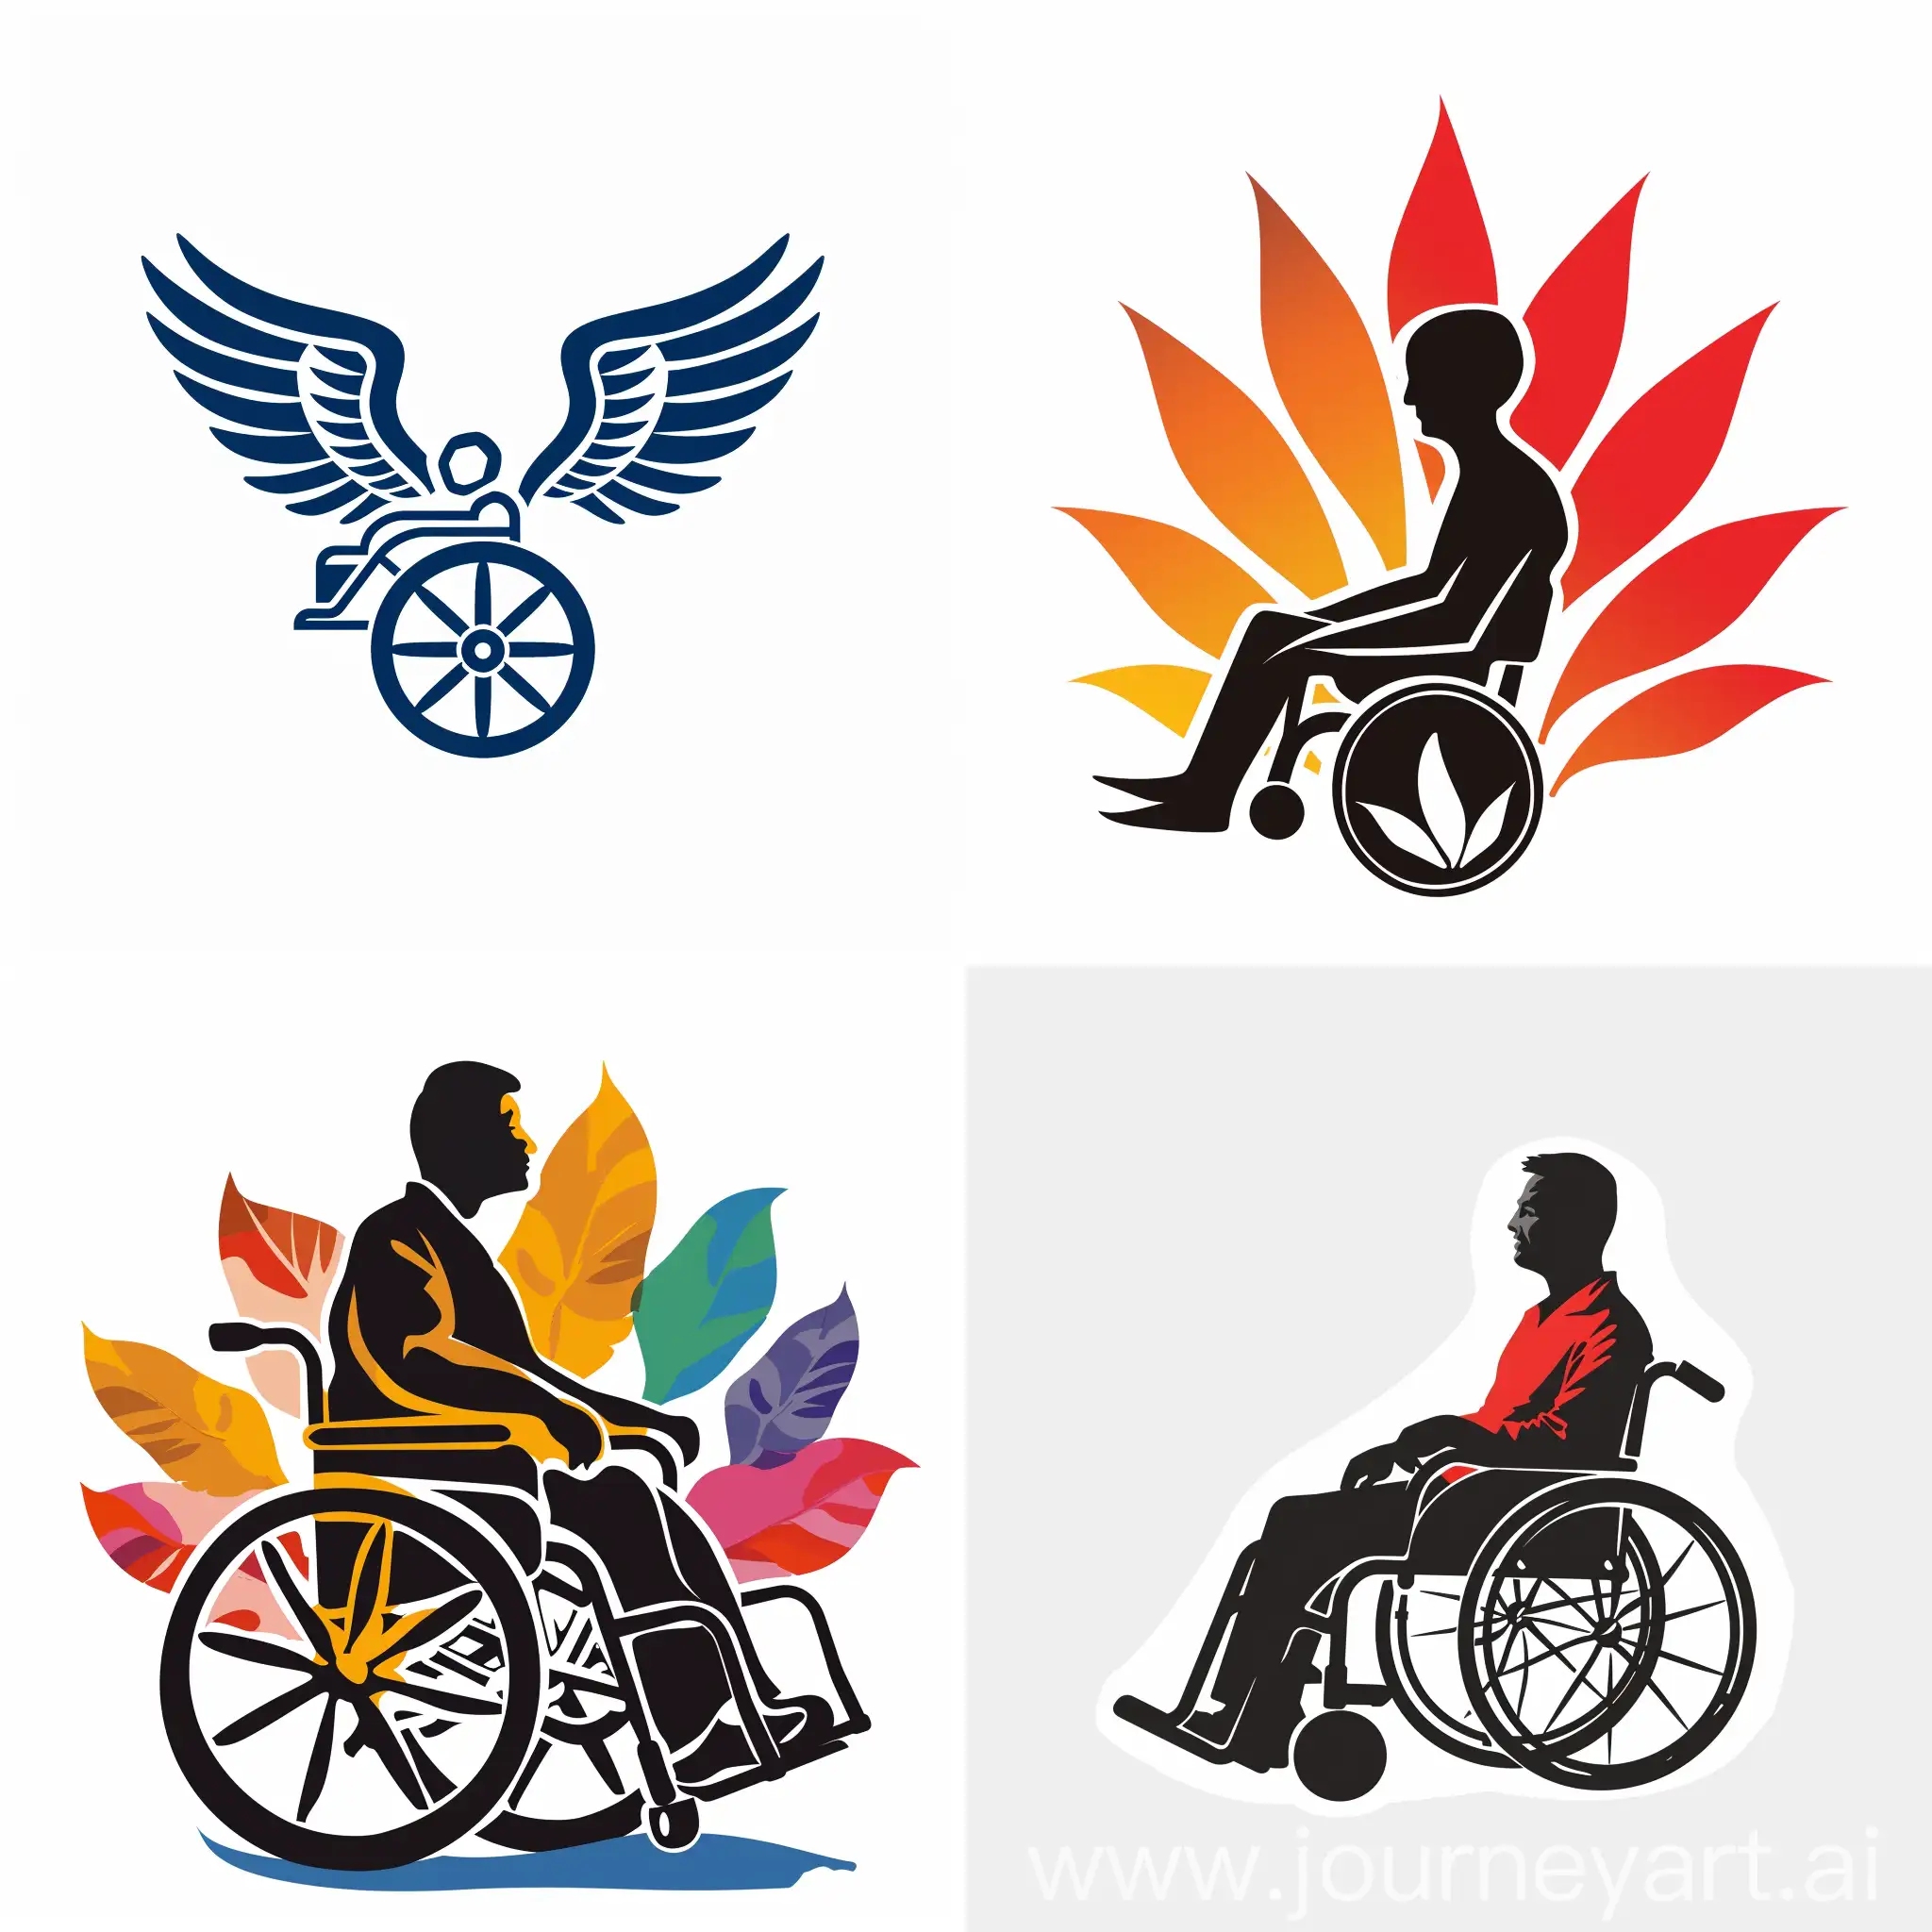 logotipo institucional de una asociación que lleve el nombre de Discapacitados Unidos por un mejor Jalisco